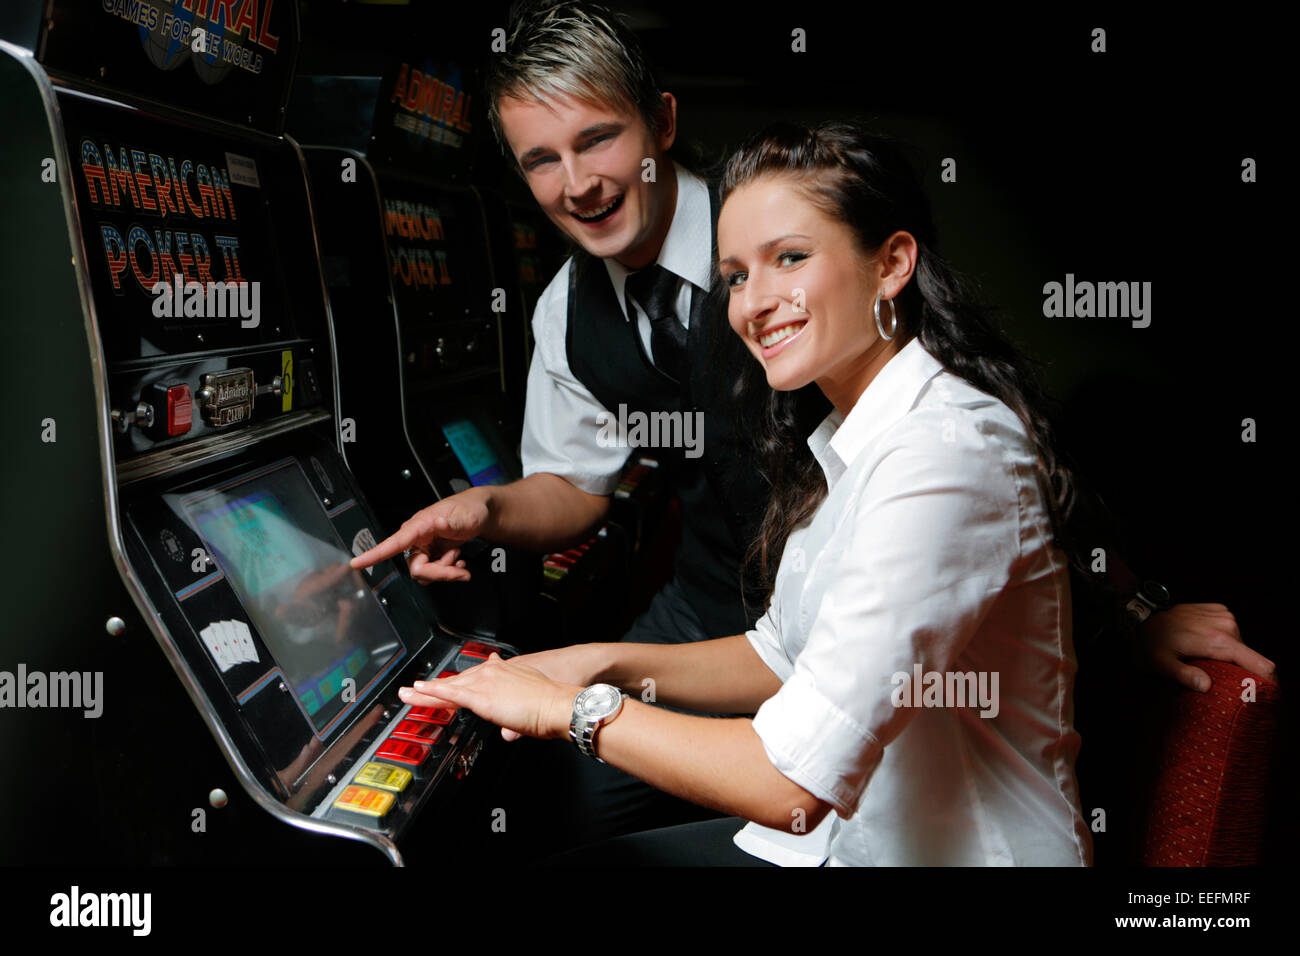 Junges Paar spielt un einem Spielautomaten Foto Stock